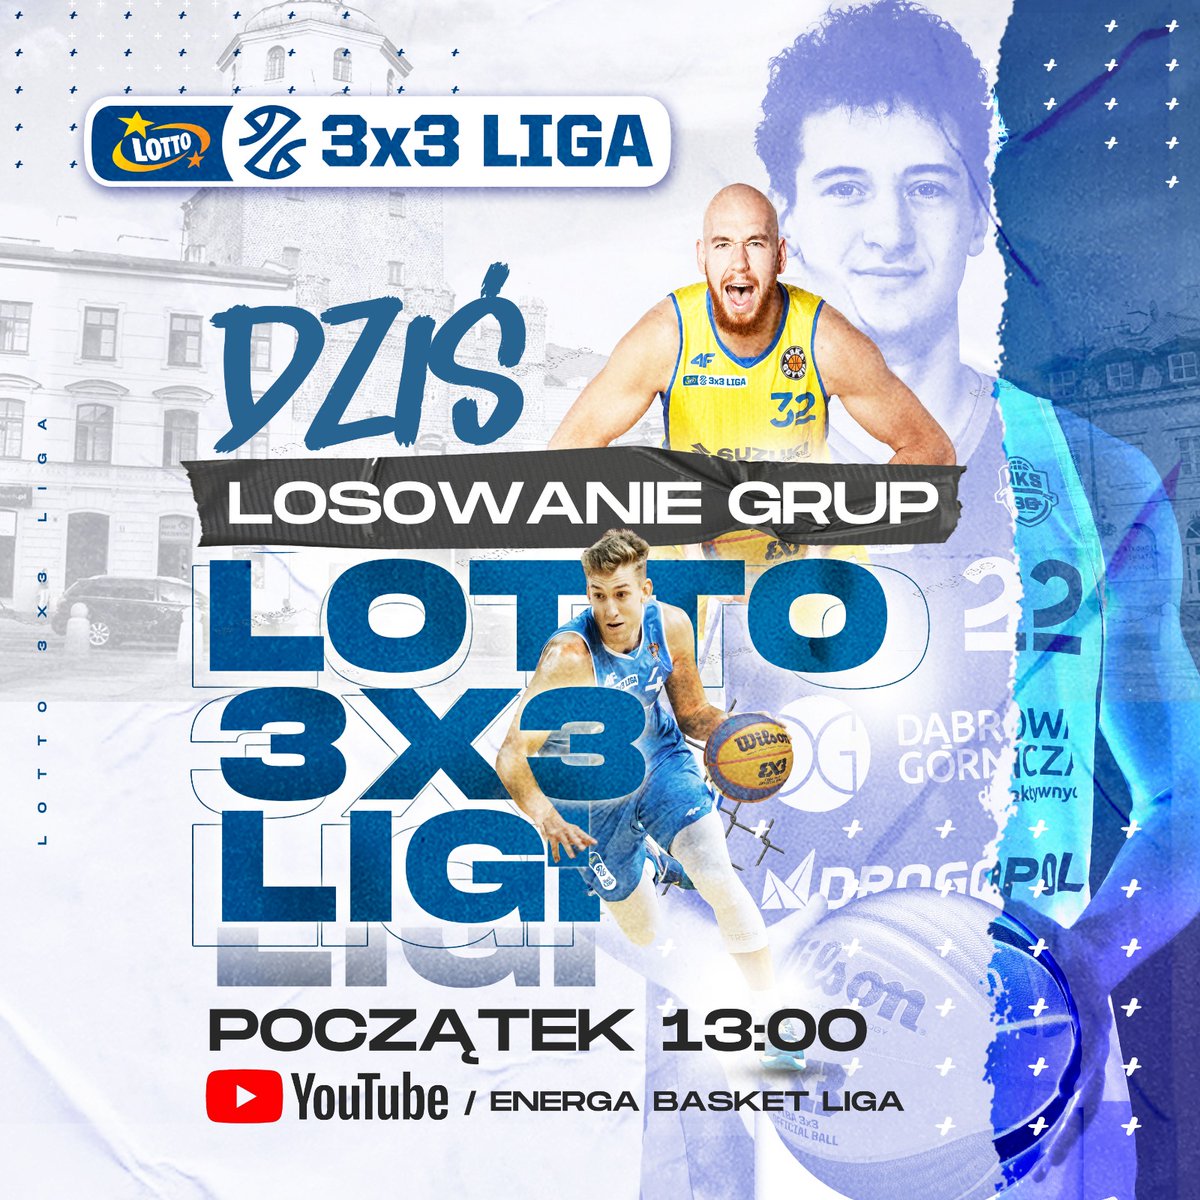 Już o 13:00 w @lcklubelskie rozpocznie się losowanie grup LOTTO 3x3 Ligi, które można śledzić na profilu #EnergaBasketLiga: 👉 youtube.com/c/WWWPLKPL
#Lubelskie
#ZDumąWspieramySport